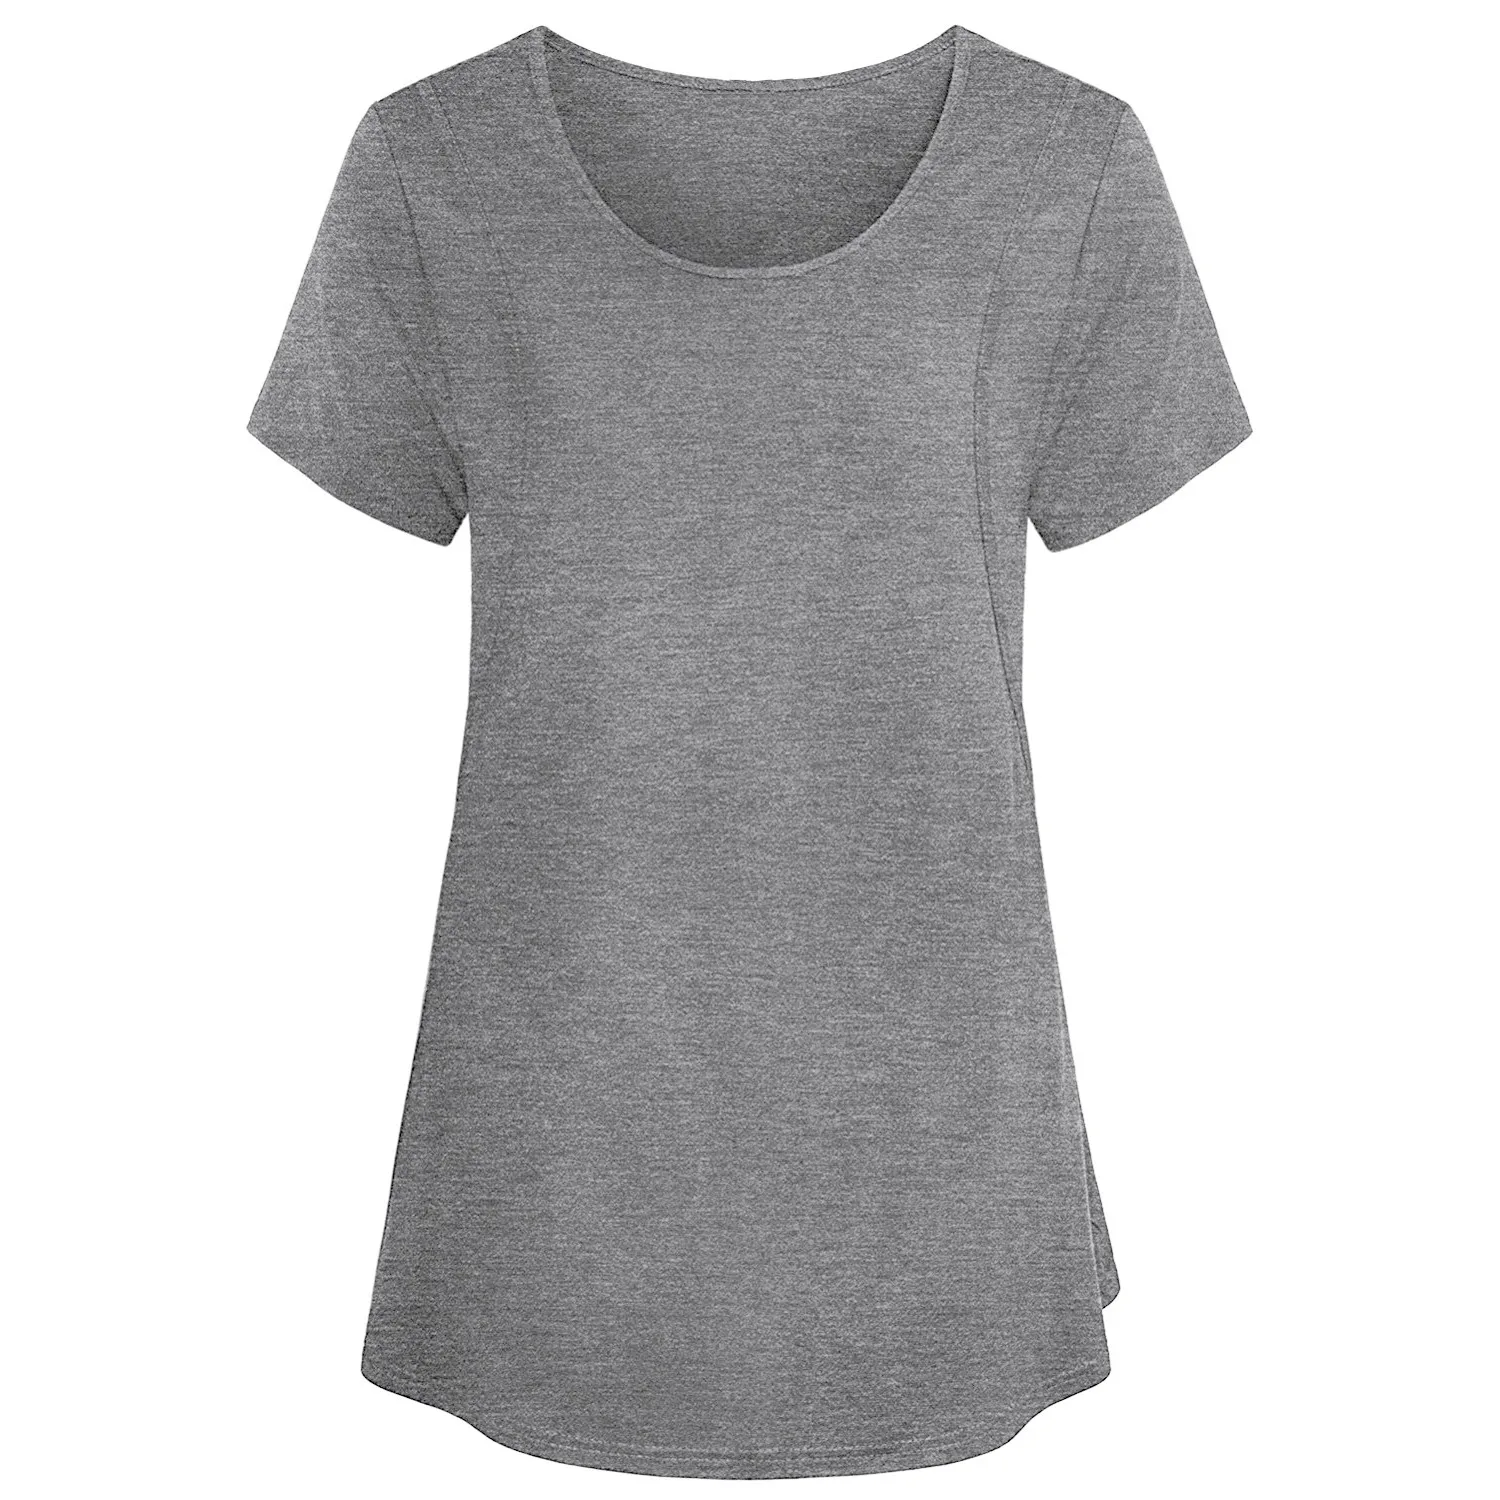 SAGACE повседневная одежда для беременных; однотонная Элегантная блузка для кормления грудью; футболки для женщин; летняя одежда для беременных